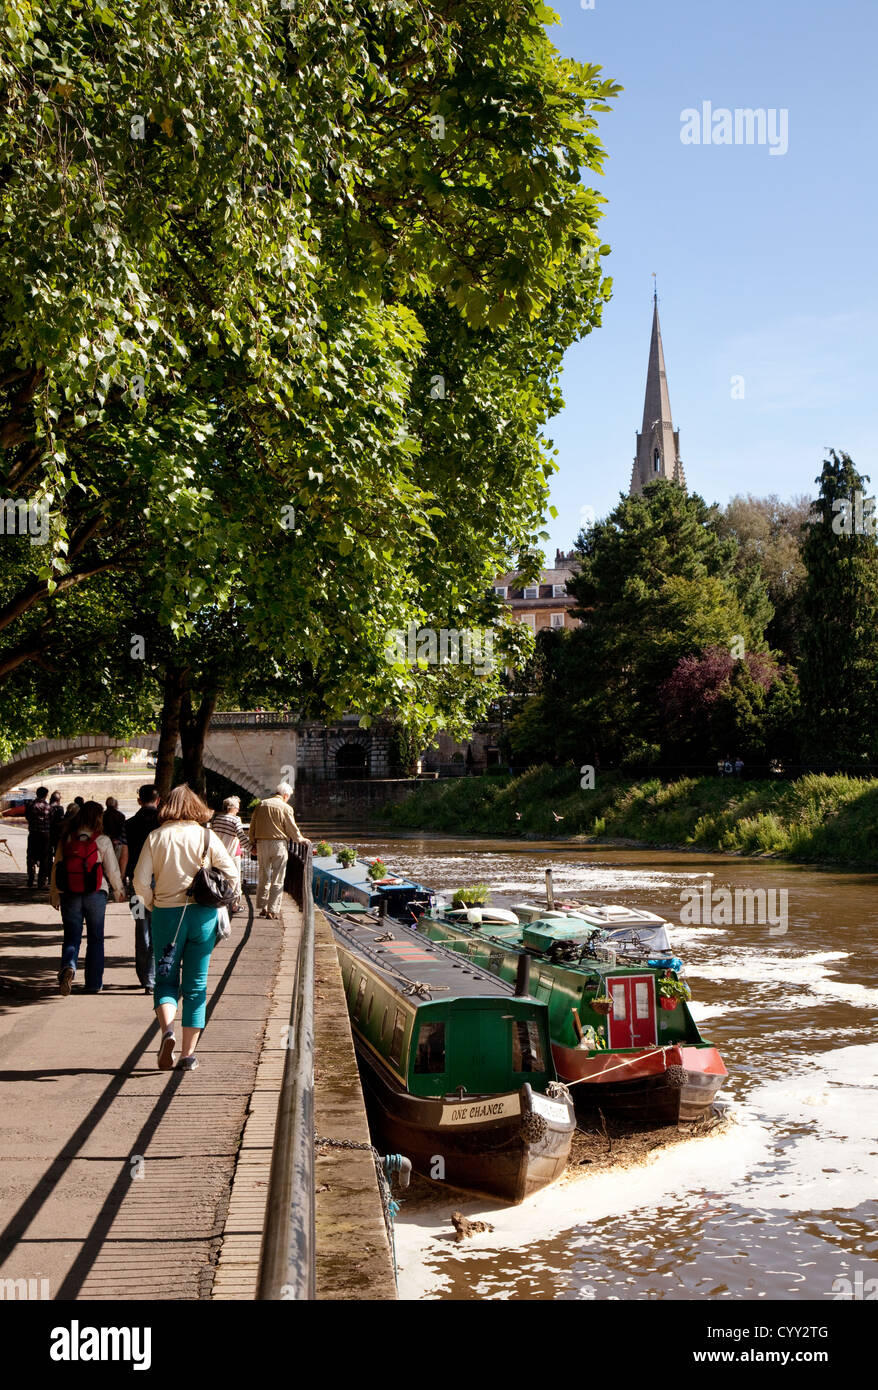 La rivière Avon avec canal boats at Bath, Somerset, Royaume-Uni Banque D'Images